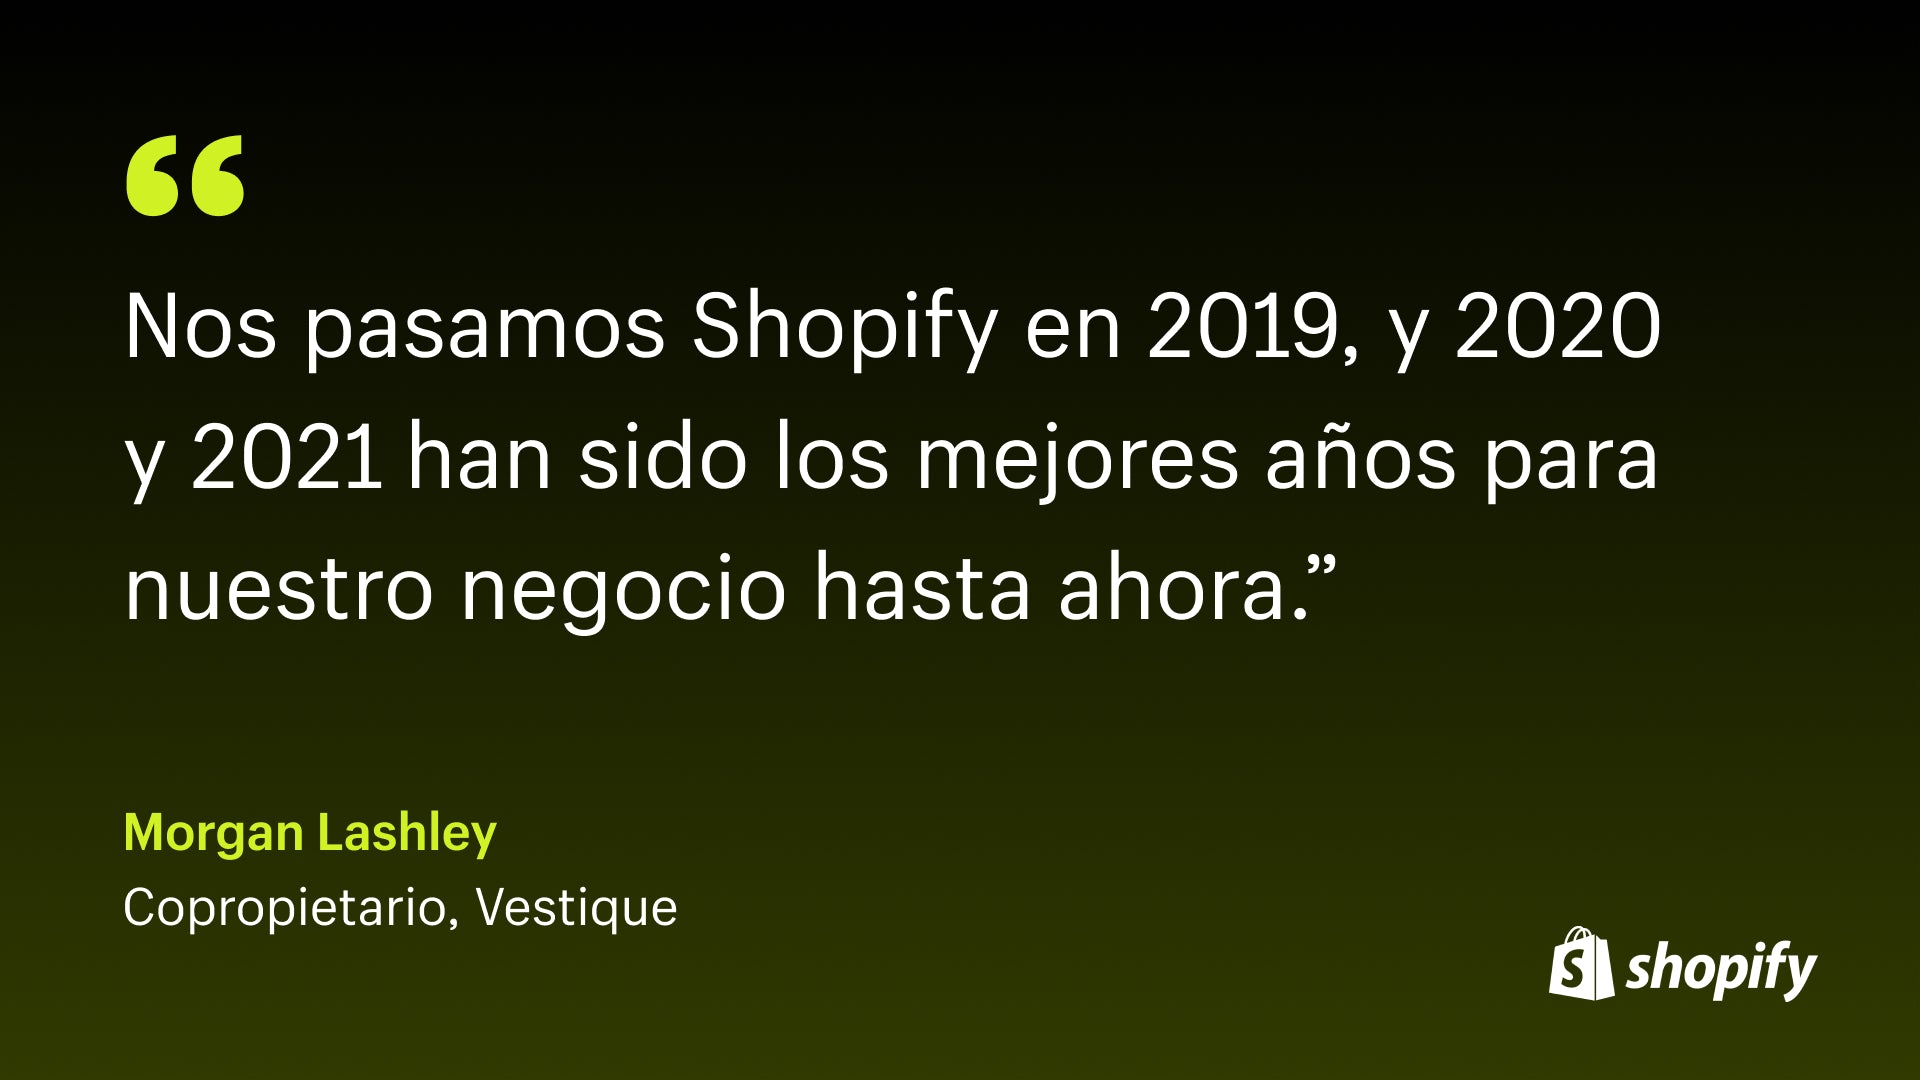 Imagen de una cita de Morgan Lashley, copropietario de Vestique, que dice: "Nos cambiamos a Shopify en 2019, y 2020 y 2021 fueron los mejores años para nuestro negocio hasta ahora".